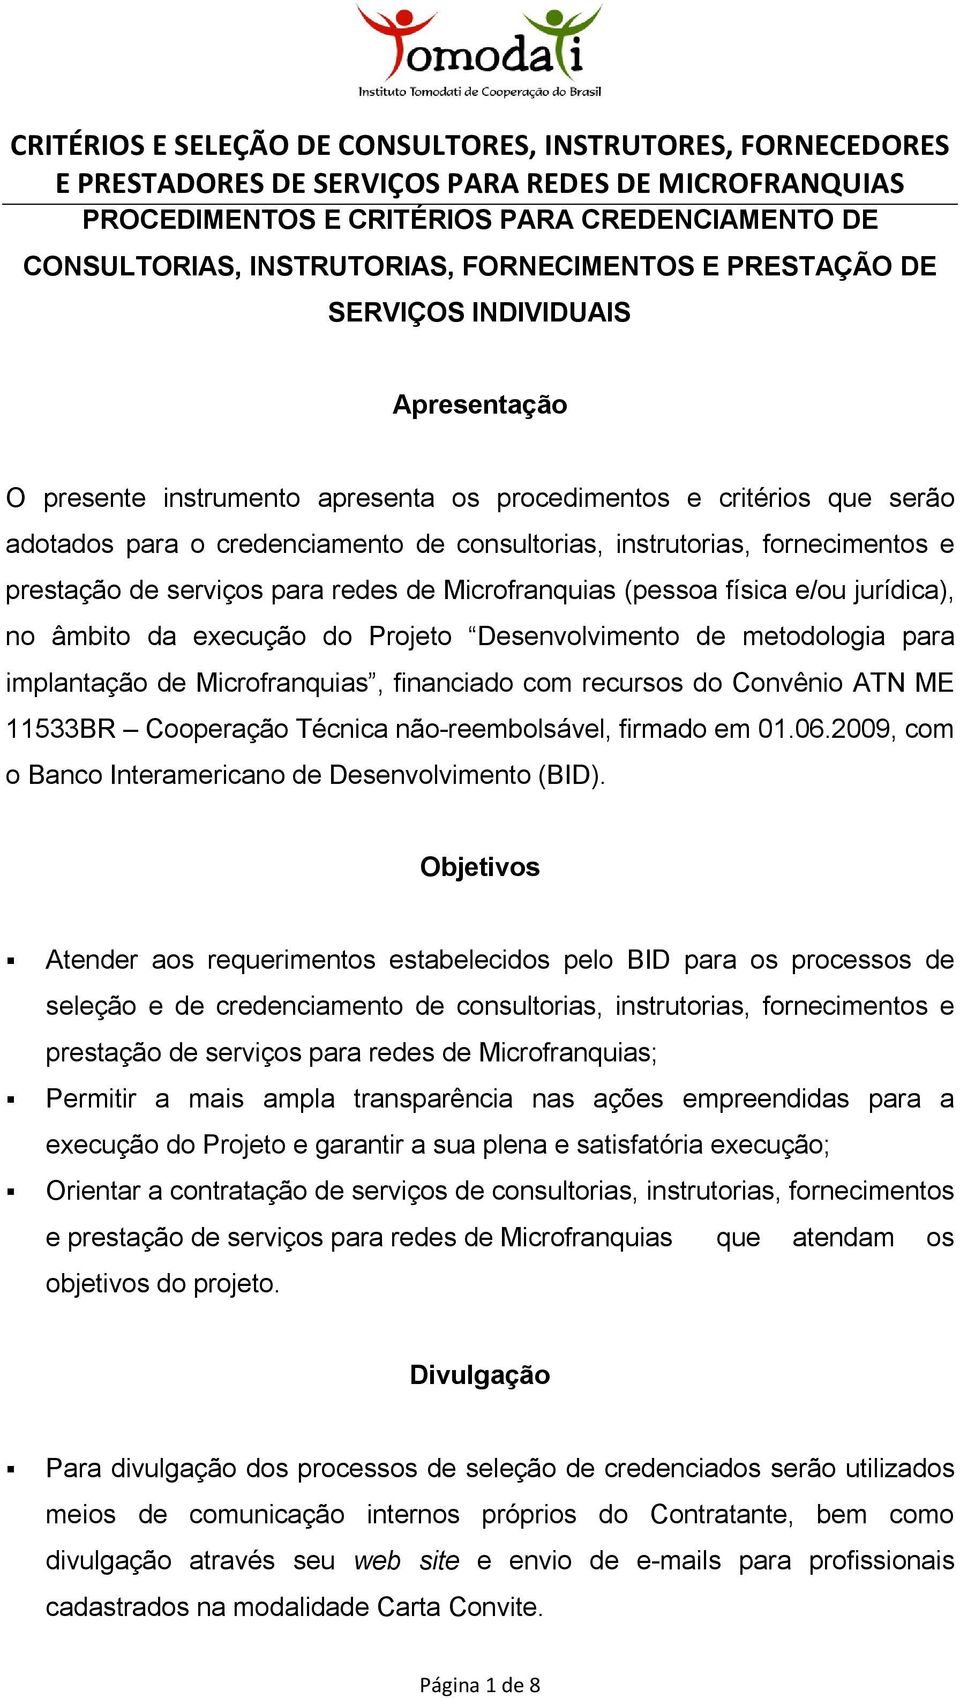 execução do Projeto Desenvolvimento de metodologia para implantação de Microfranquias, financiado com recursos do Convênio ATN ME 11533BR Cooperação Técnica não-reembolsável, firmado em 01.06.